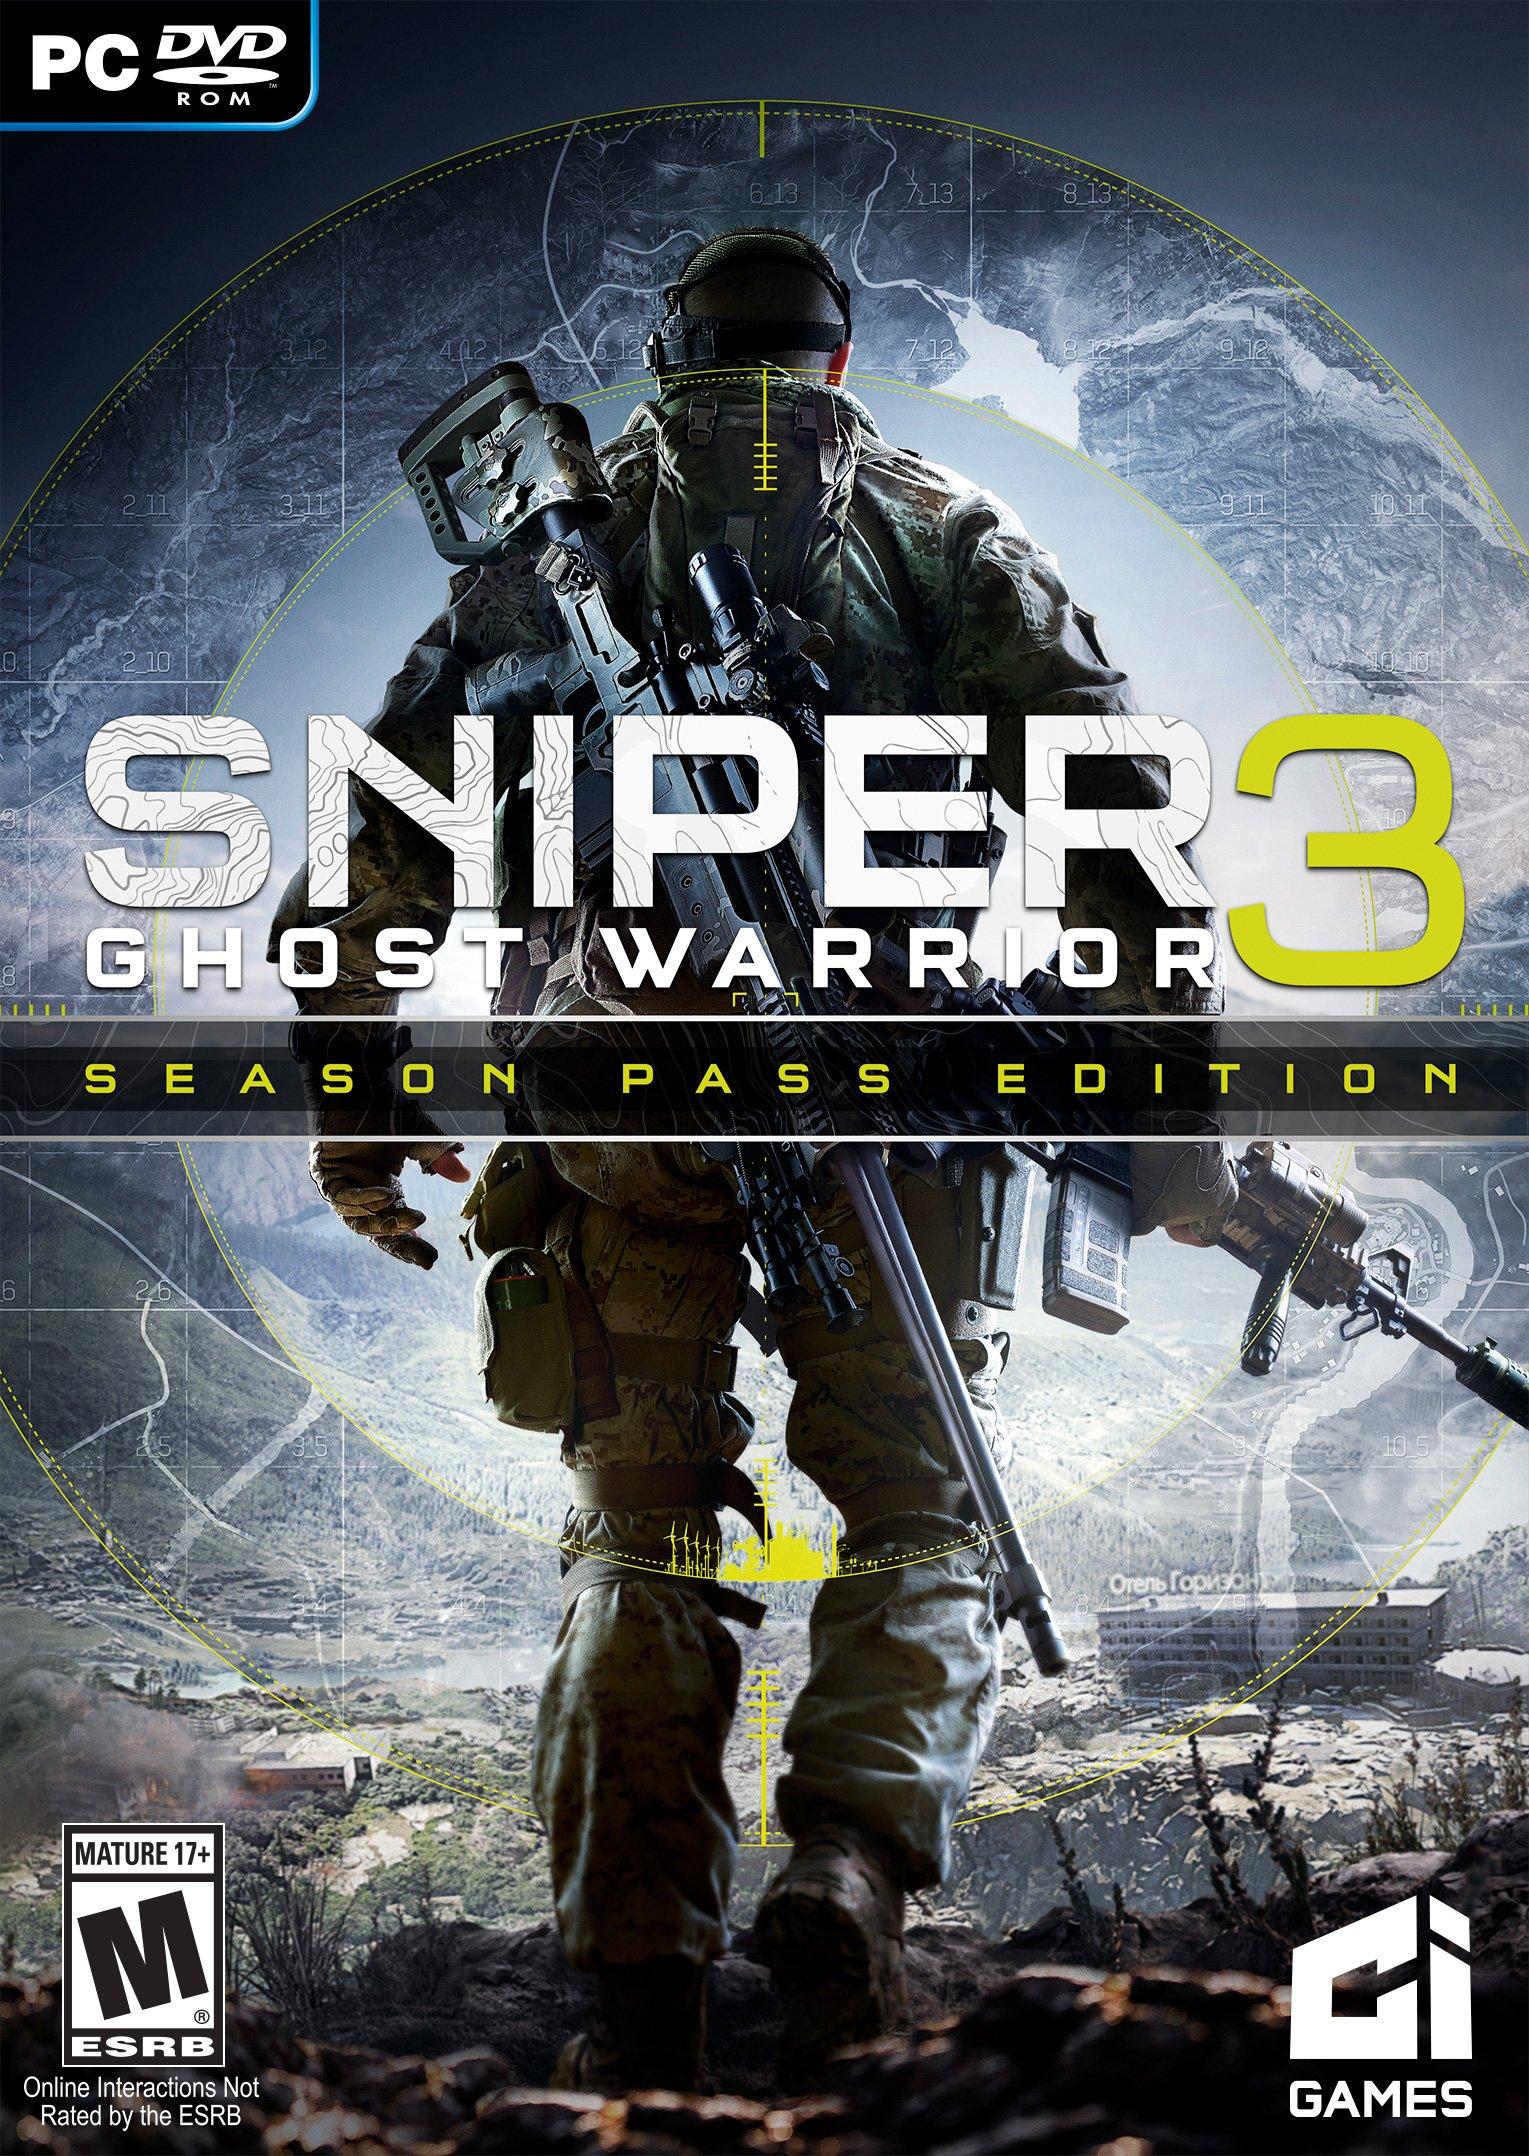 Sniper Ghost Warrior 3 Season Edition | GameStop